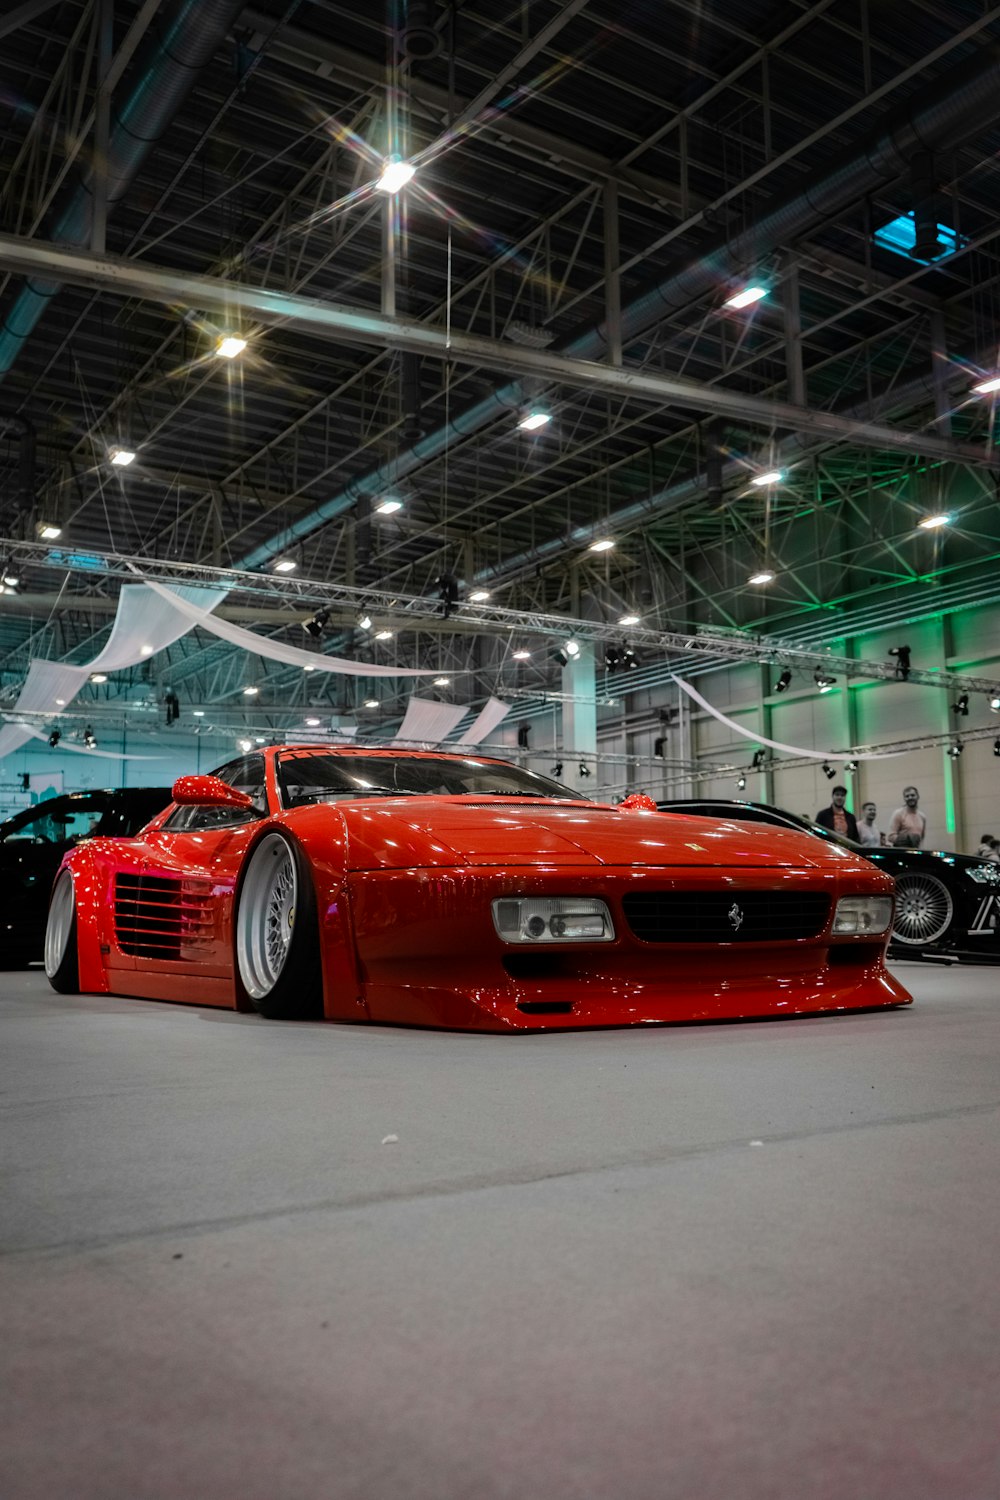 Un coche deportivo rojo estacionado en un garaje